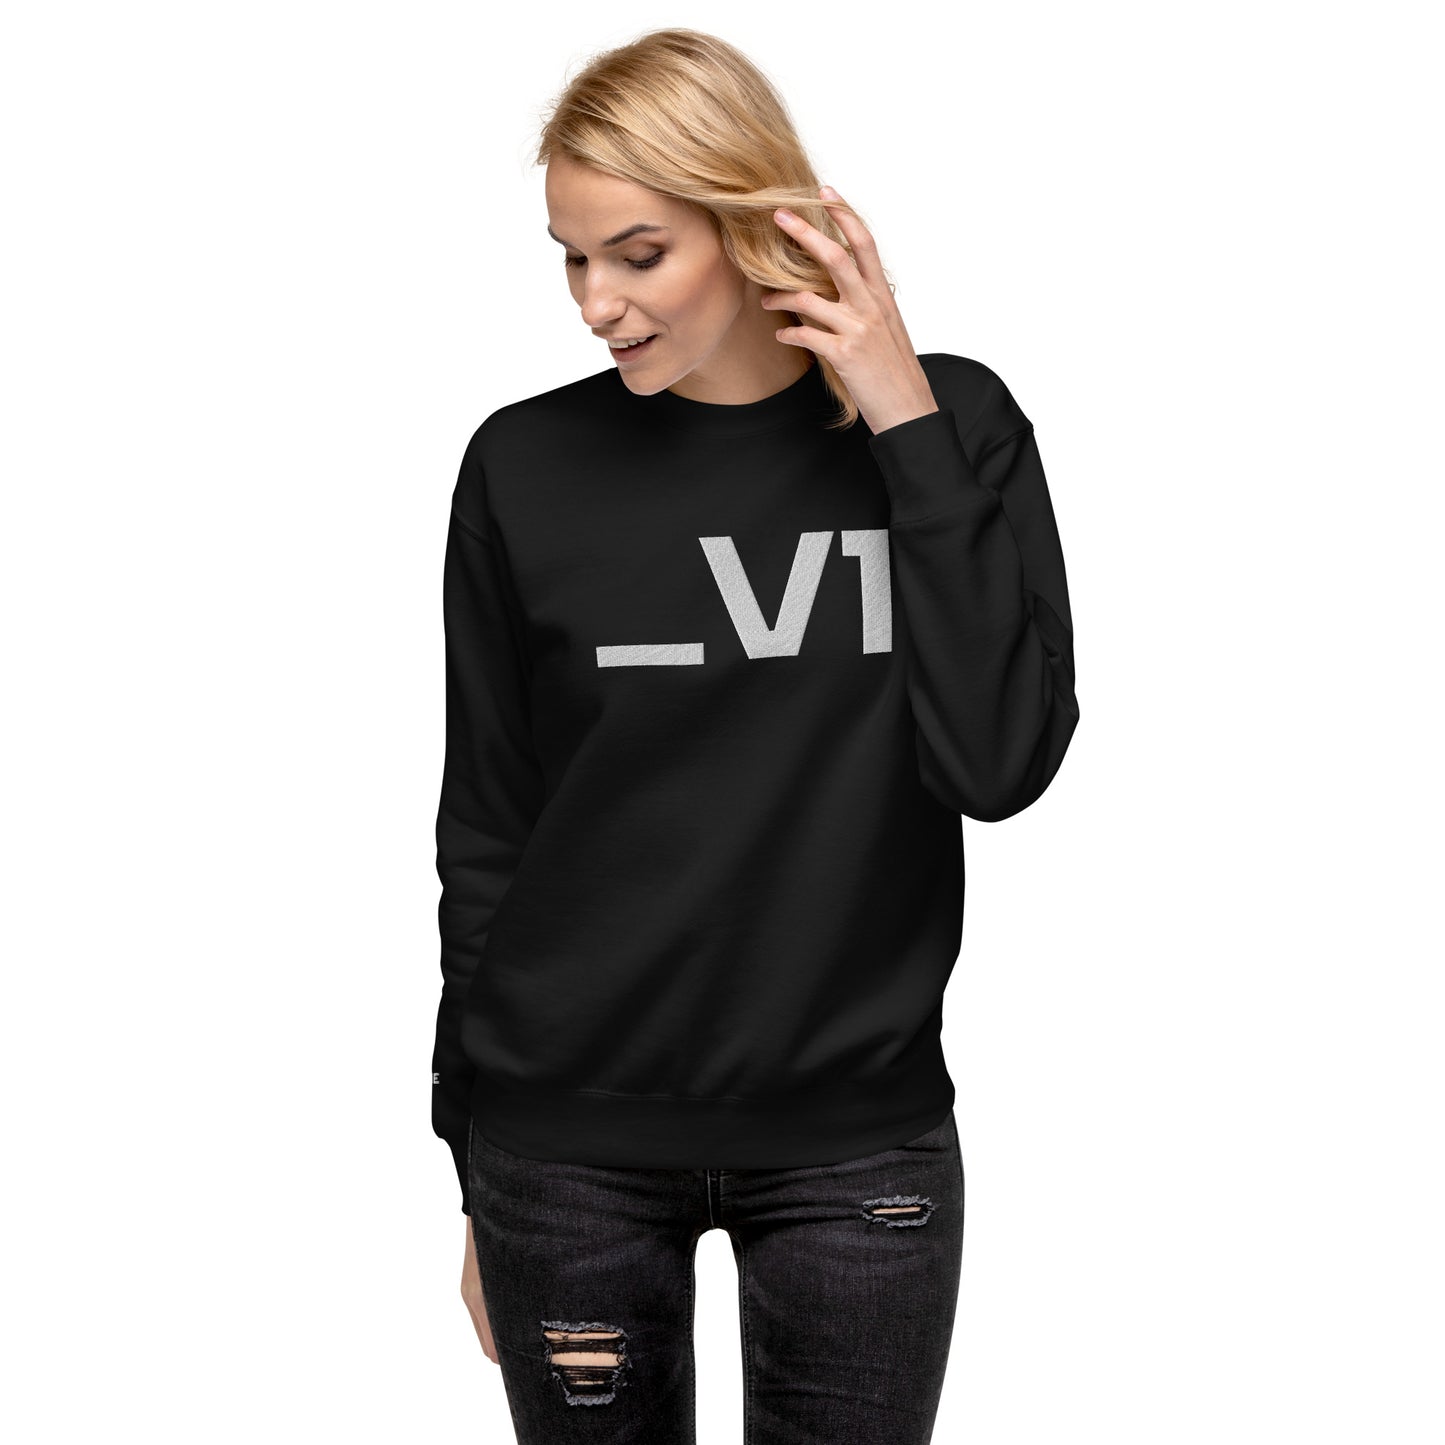 _V1 Large Embroidery Unisex Premium Sweatshirt